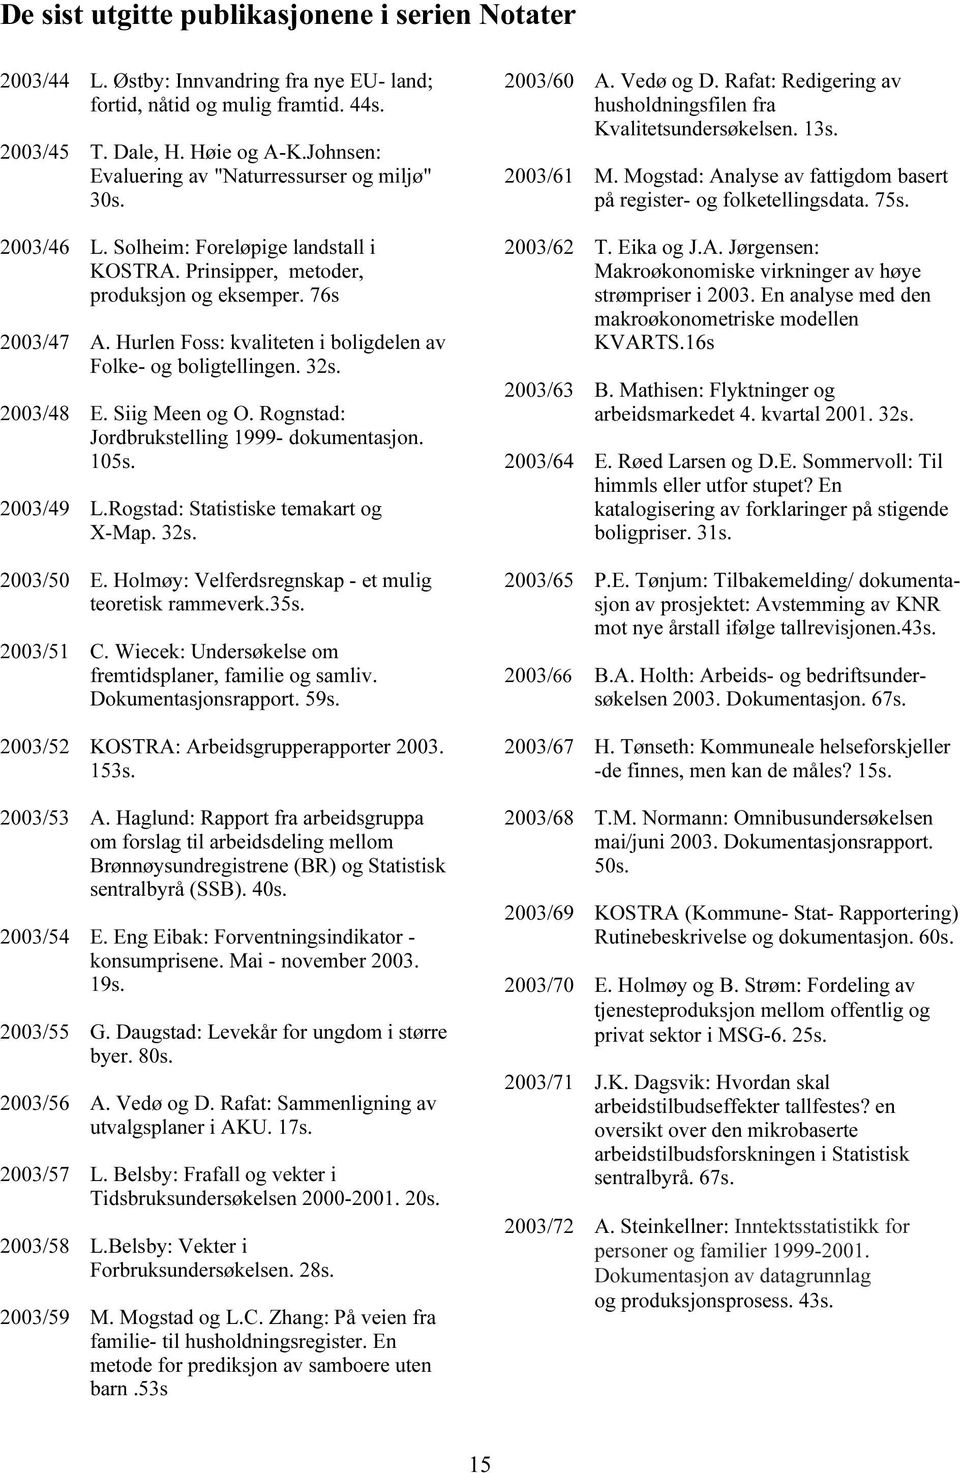 Rognstad: Jodbkstlling 1999- dokmntasjon. 15s. 23/49 L.Rogstad: Statistisk tmakat og X-Map. 32s. 23/5 E. Holmøy: Vlfdsgnskap - t mlig totisk ammvk.35s. 23/51 C.